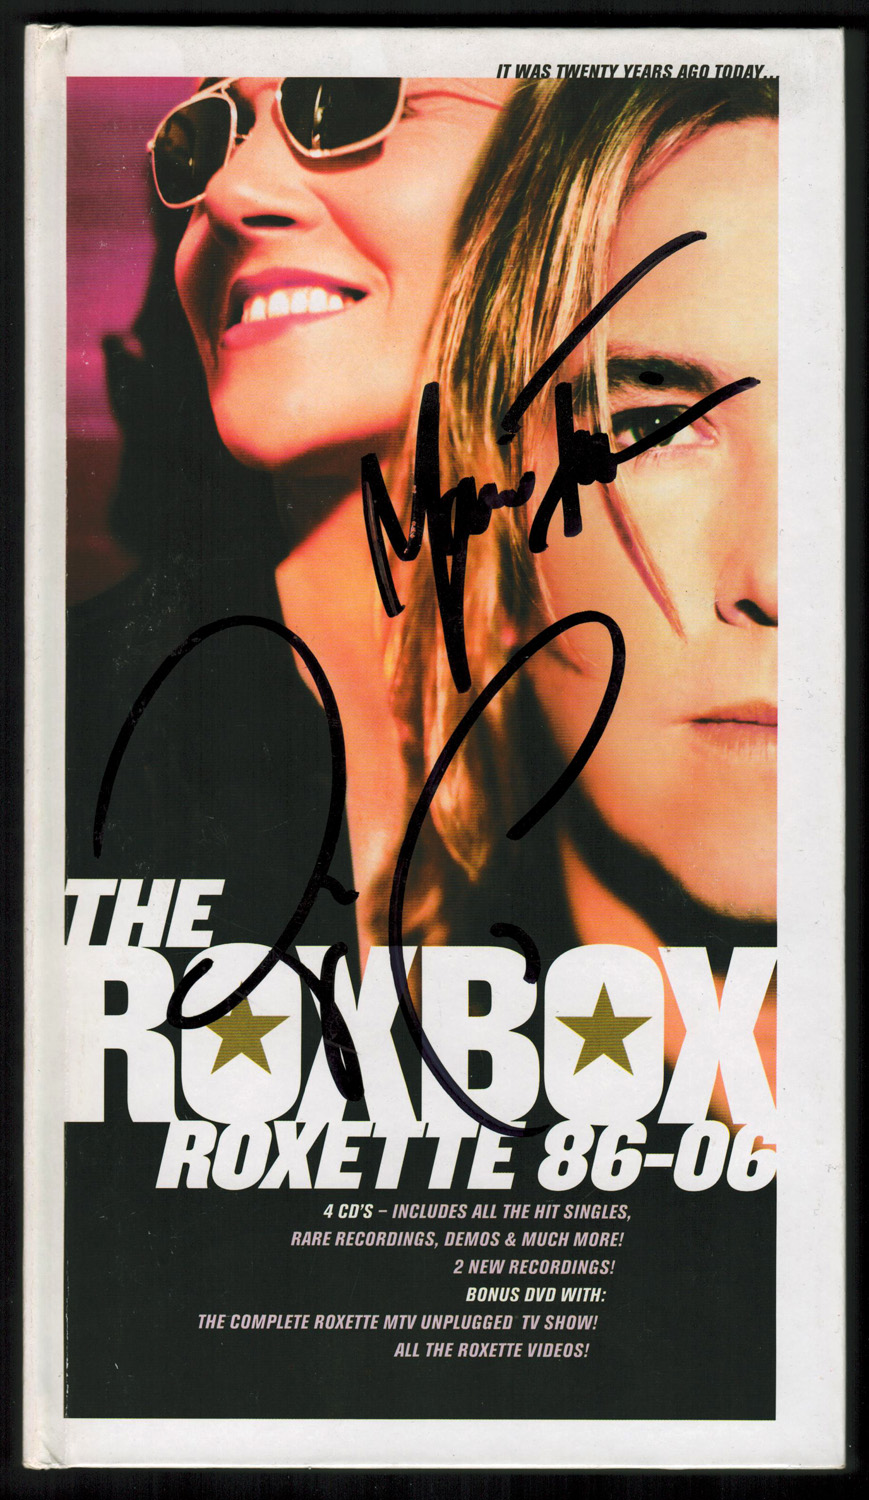 Roxbox Roblox 2019 08 29 - rox box roblox